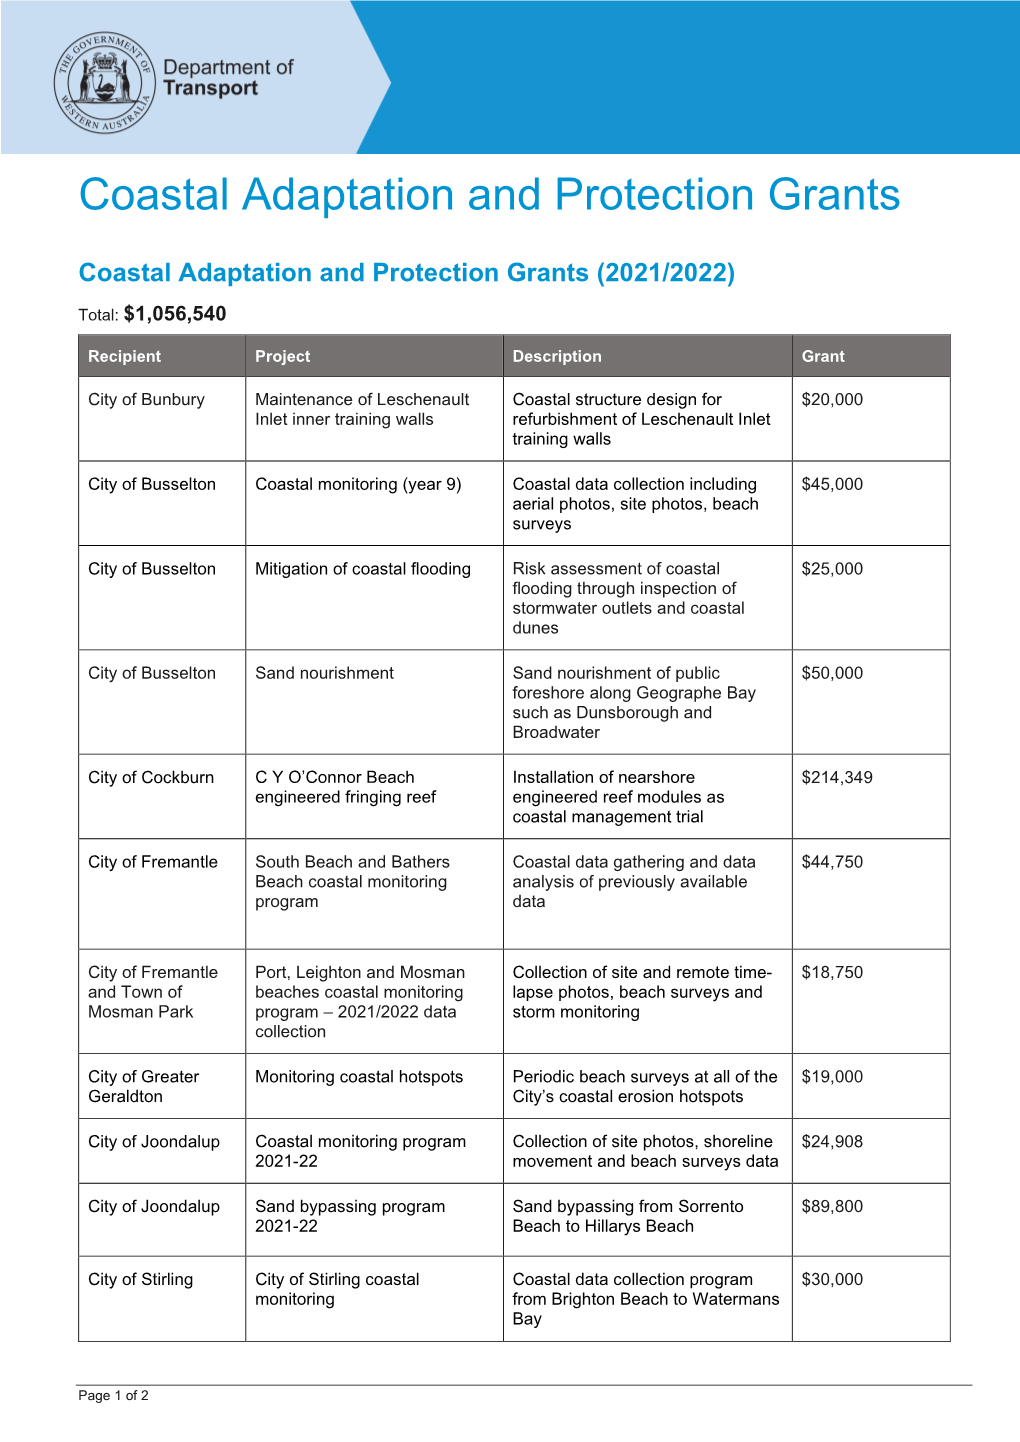 Coastal Adaptation and Protection (CAP) Grants